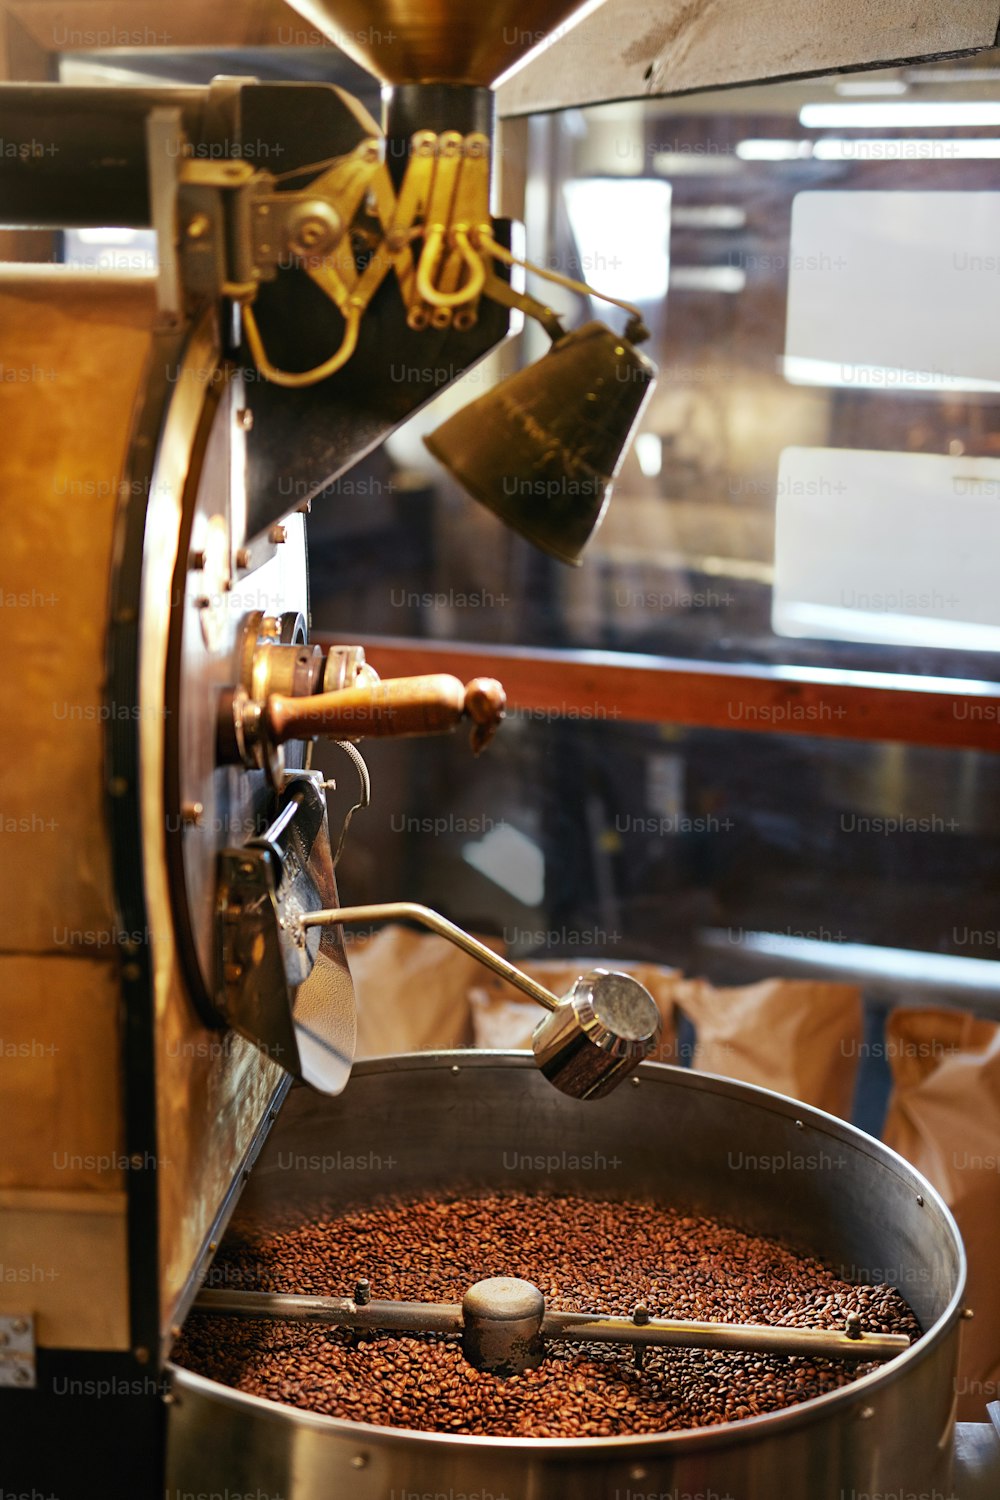 Rösten von Kaffeebohnen im Café. Kaffee-Frittiermaschine mit Kaffeebohnen. Hohe Auflösung